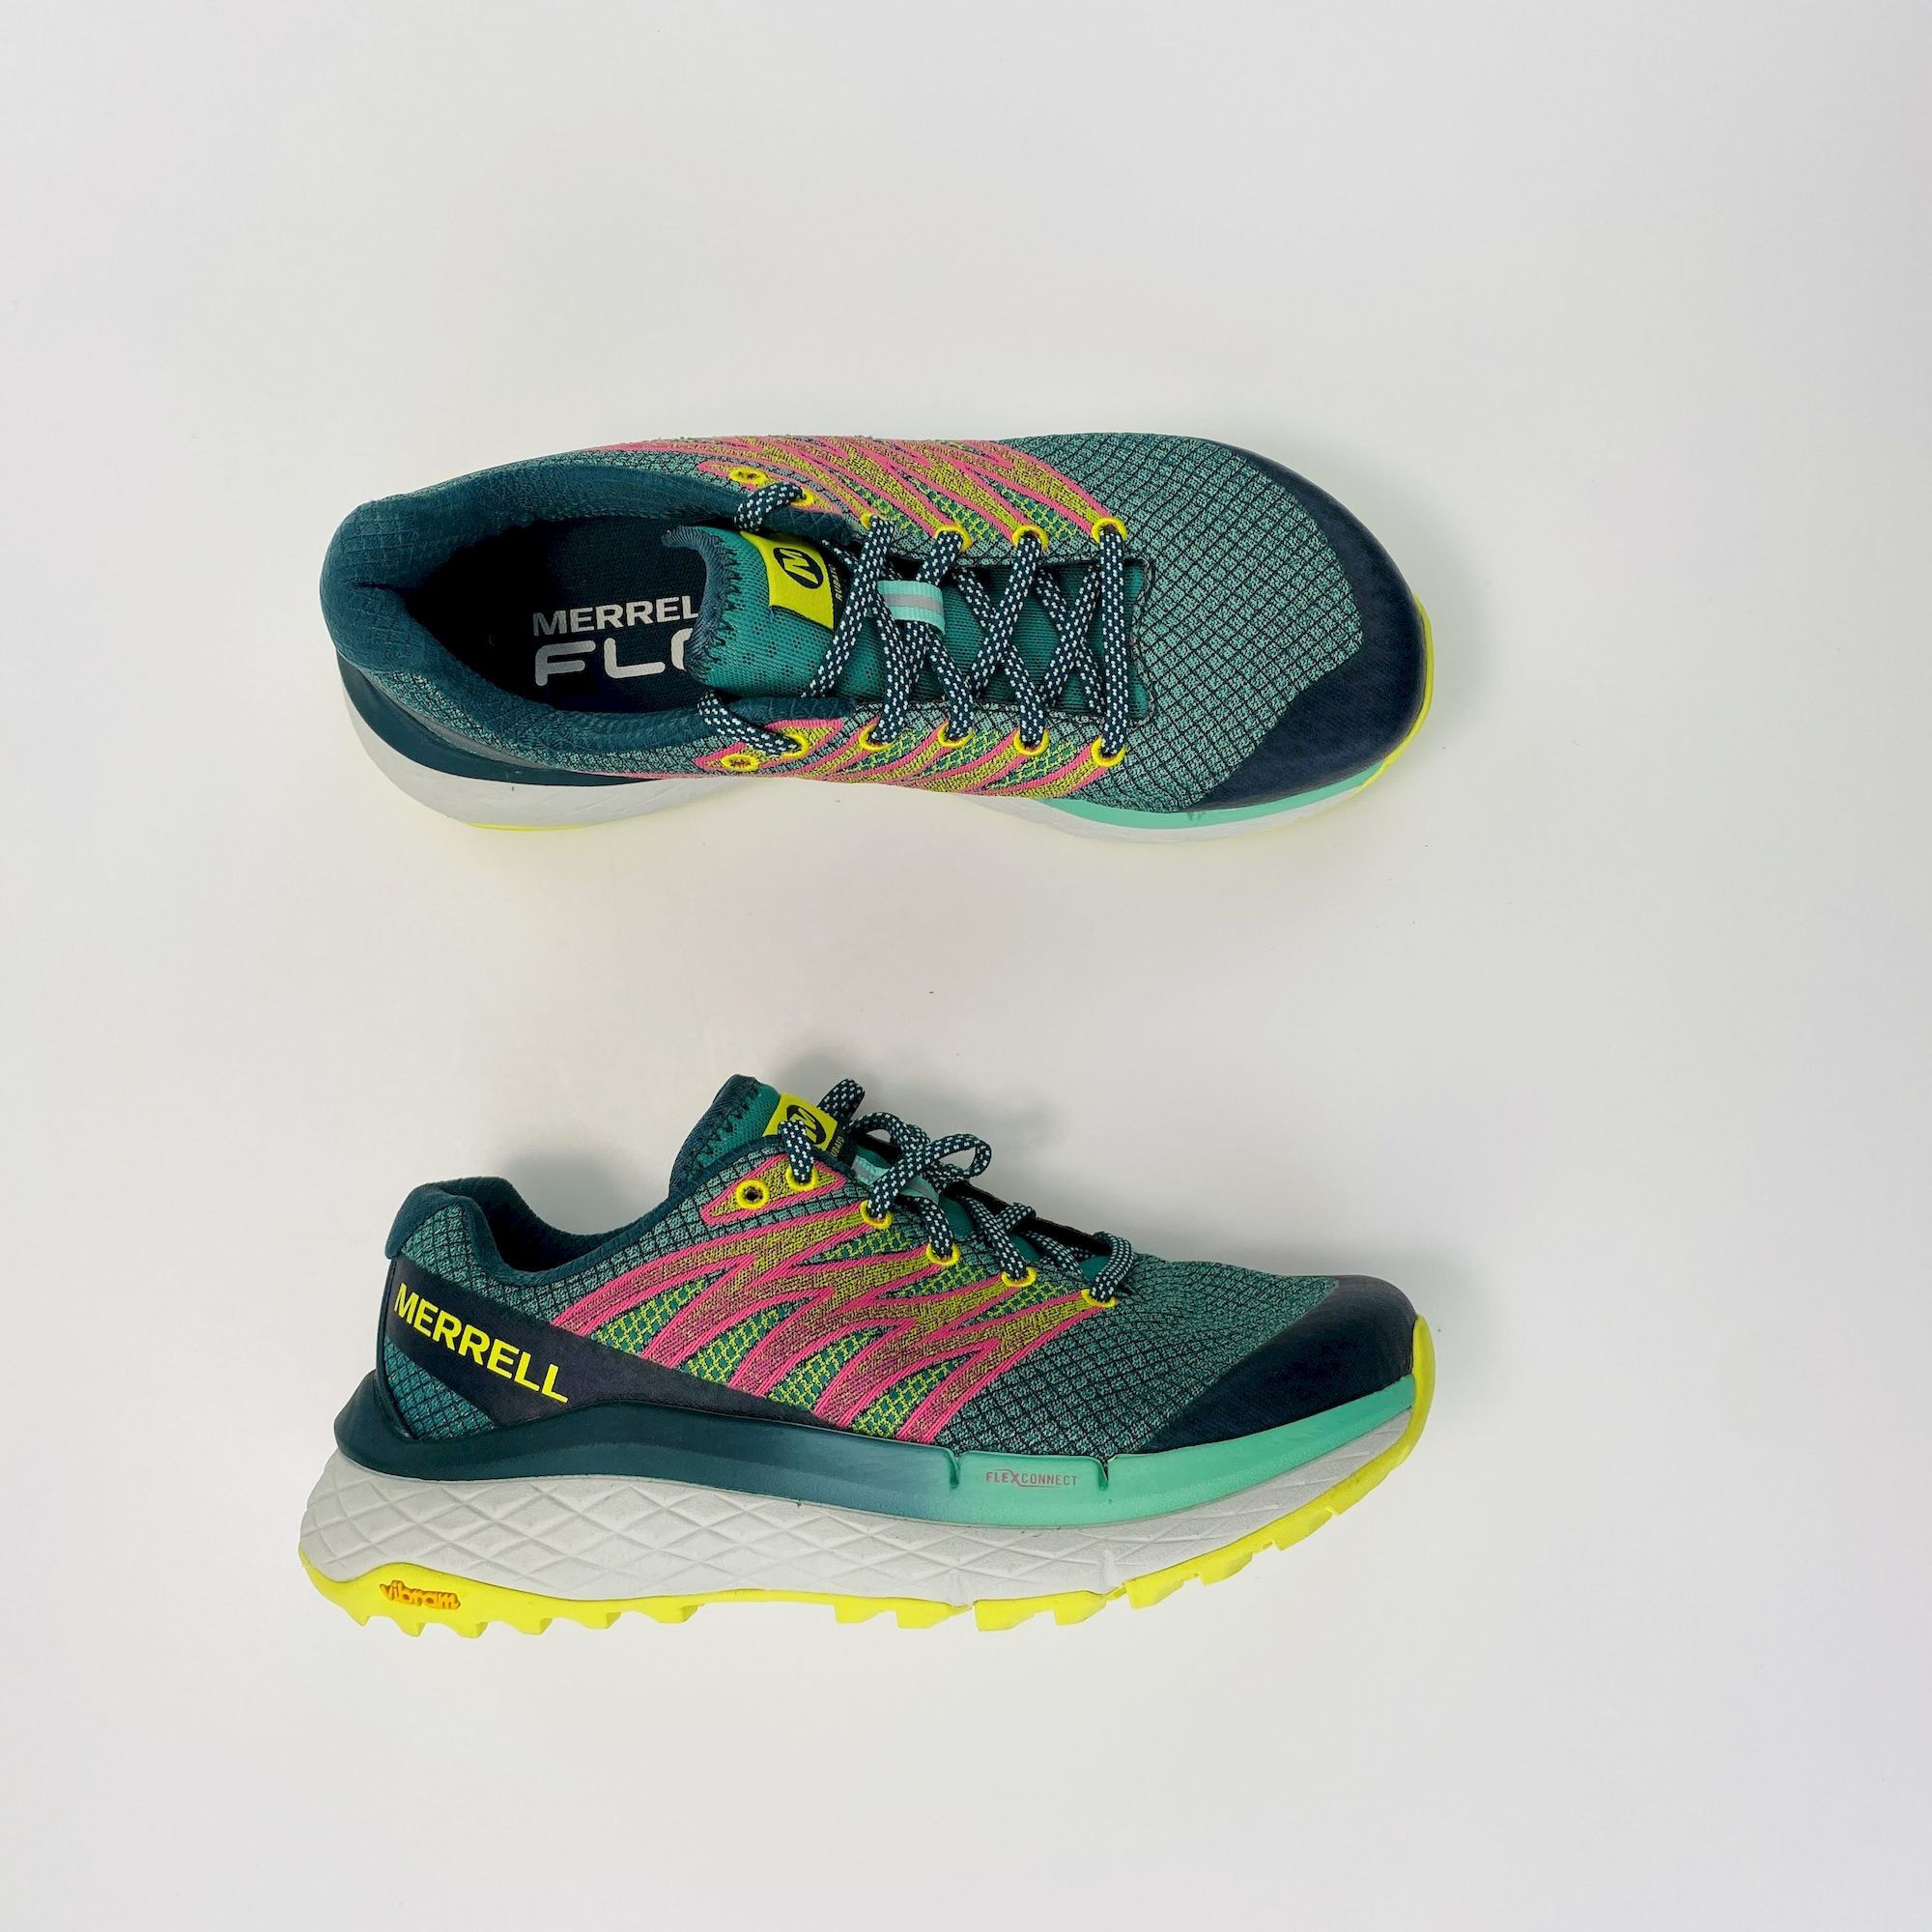 Merrell Rubato - Scarpe da trail running di seconda mano - Donna - Multicolore - 37.5 | Hardloop